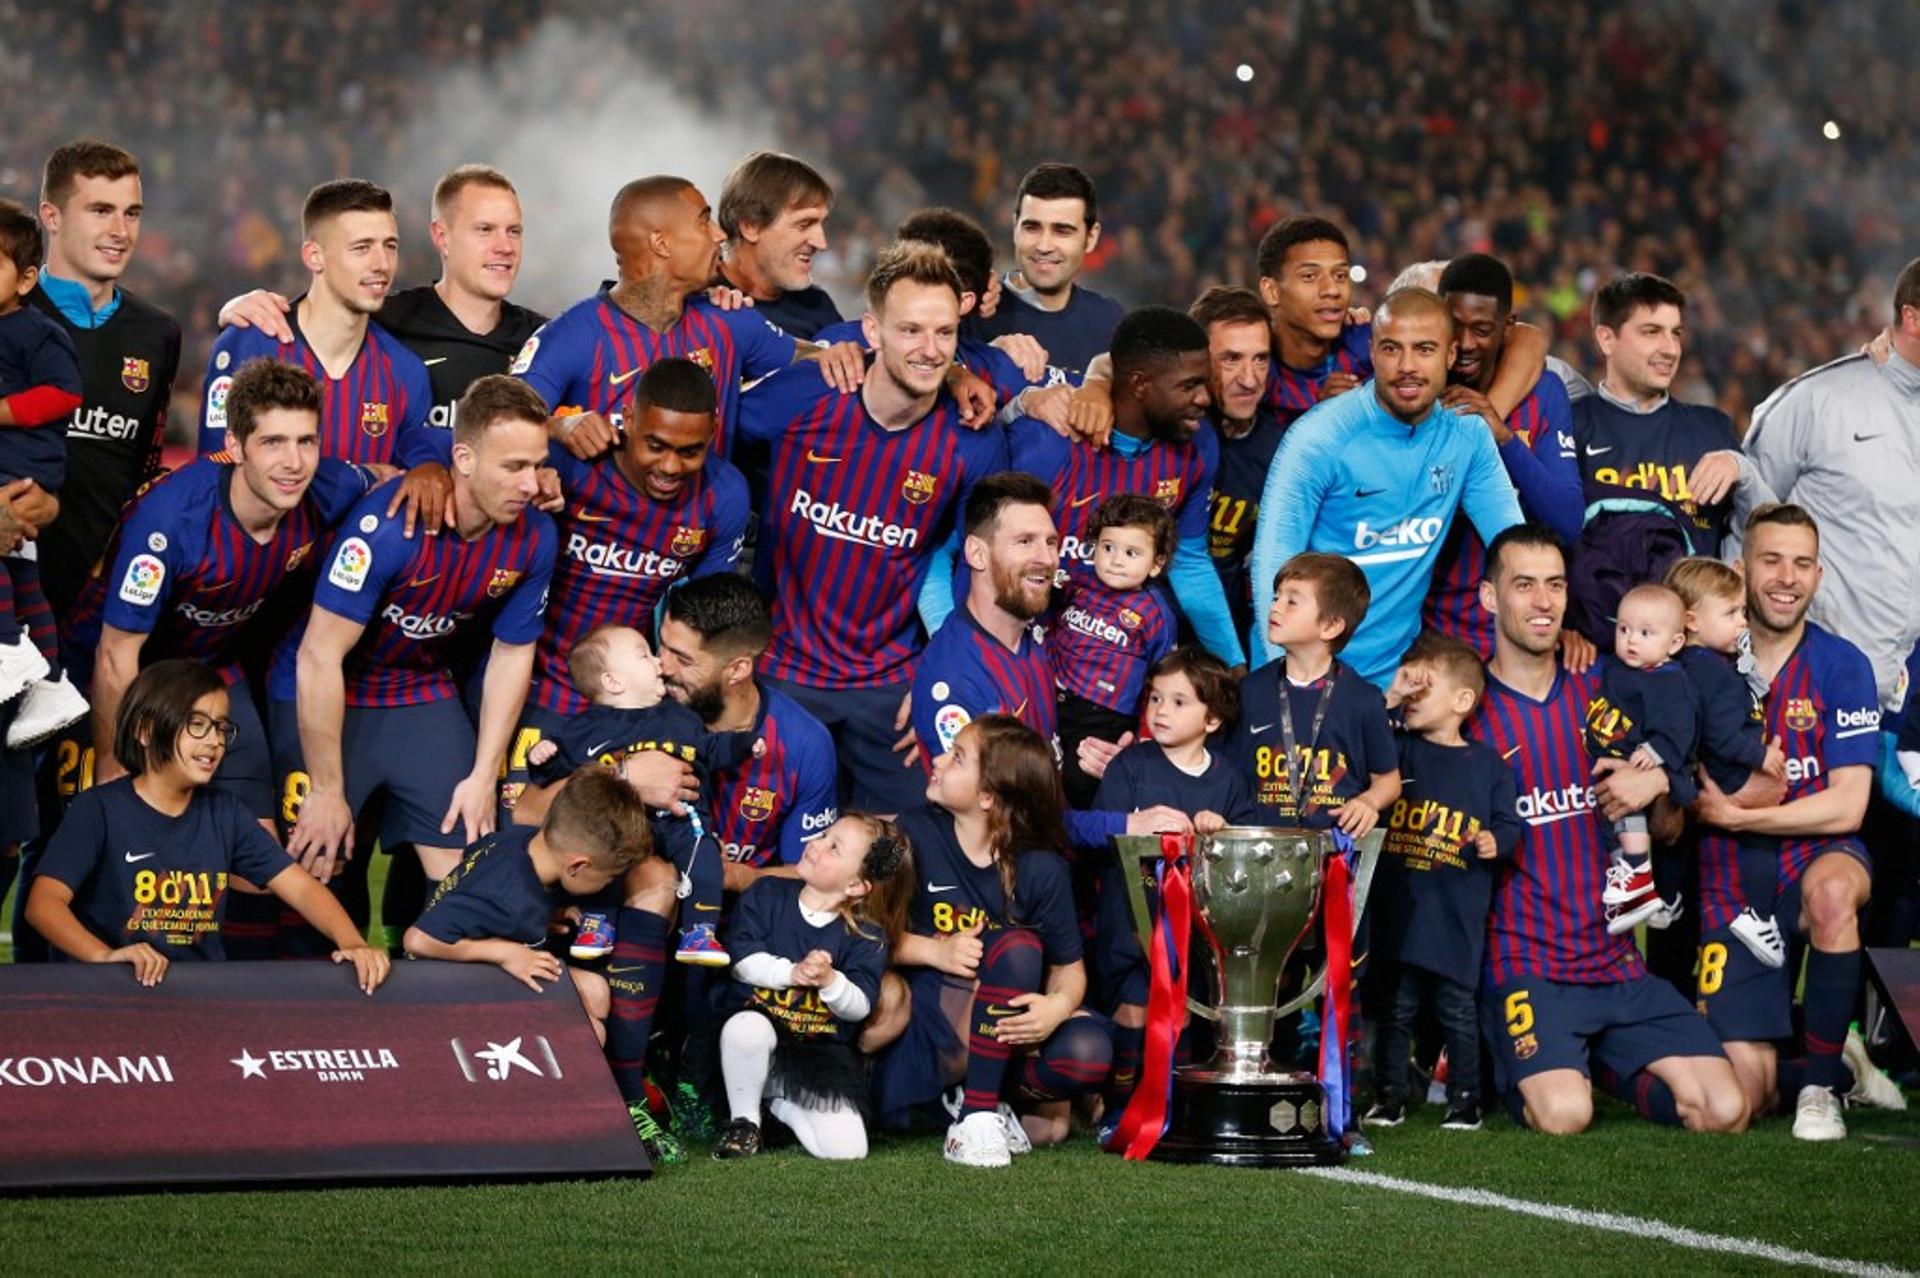 O Barcelona venceu o Levante neste sábado por 1 a 0 e conquistou mais um título do Campeonato Espanhol. Com 83 pontos, o time levou o torneio de forma antecipada. É o 26º título da história do clube na competição e o 10º de Lionel Messi. Veja as La Ligas vencidas pelo Barça neste século: